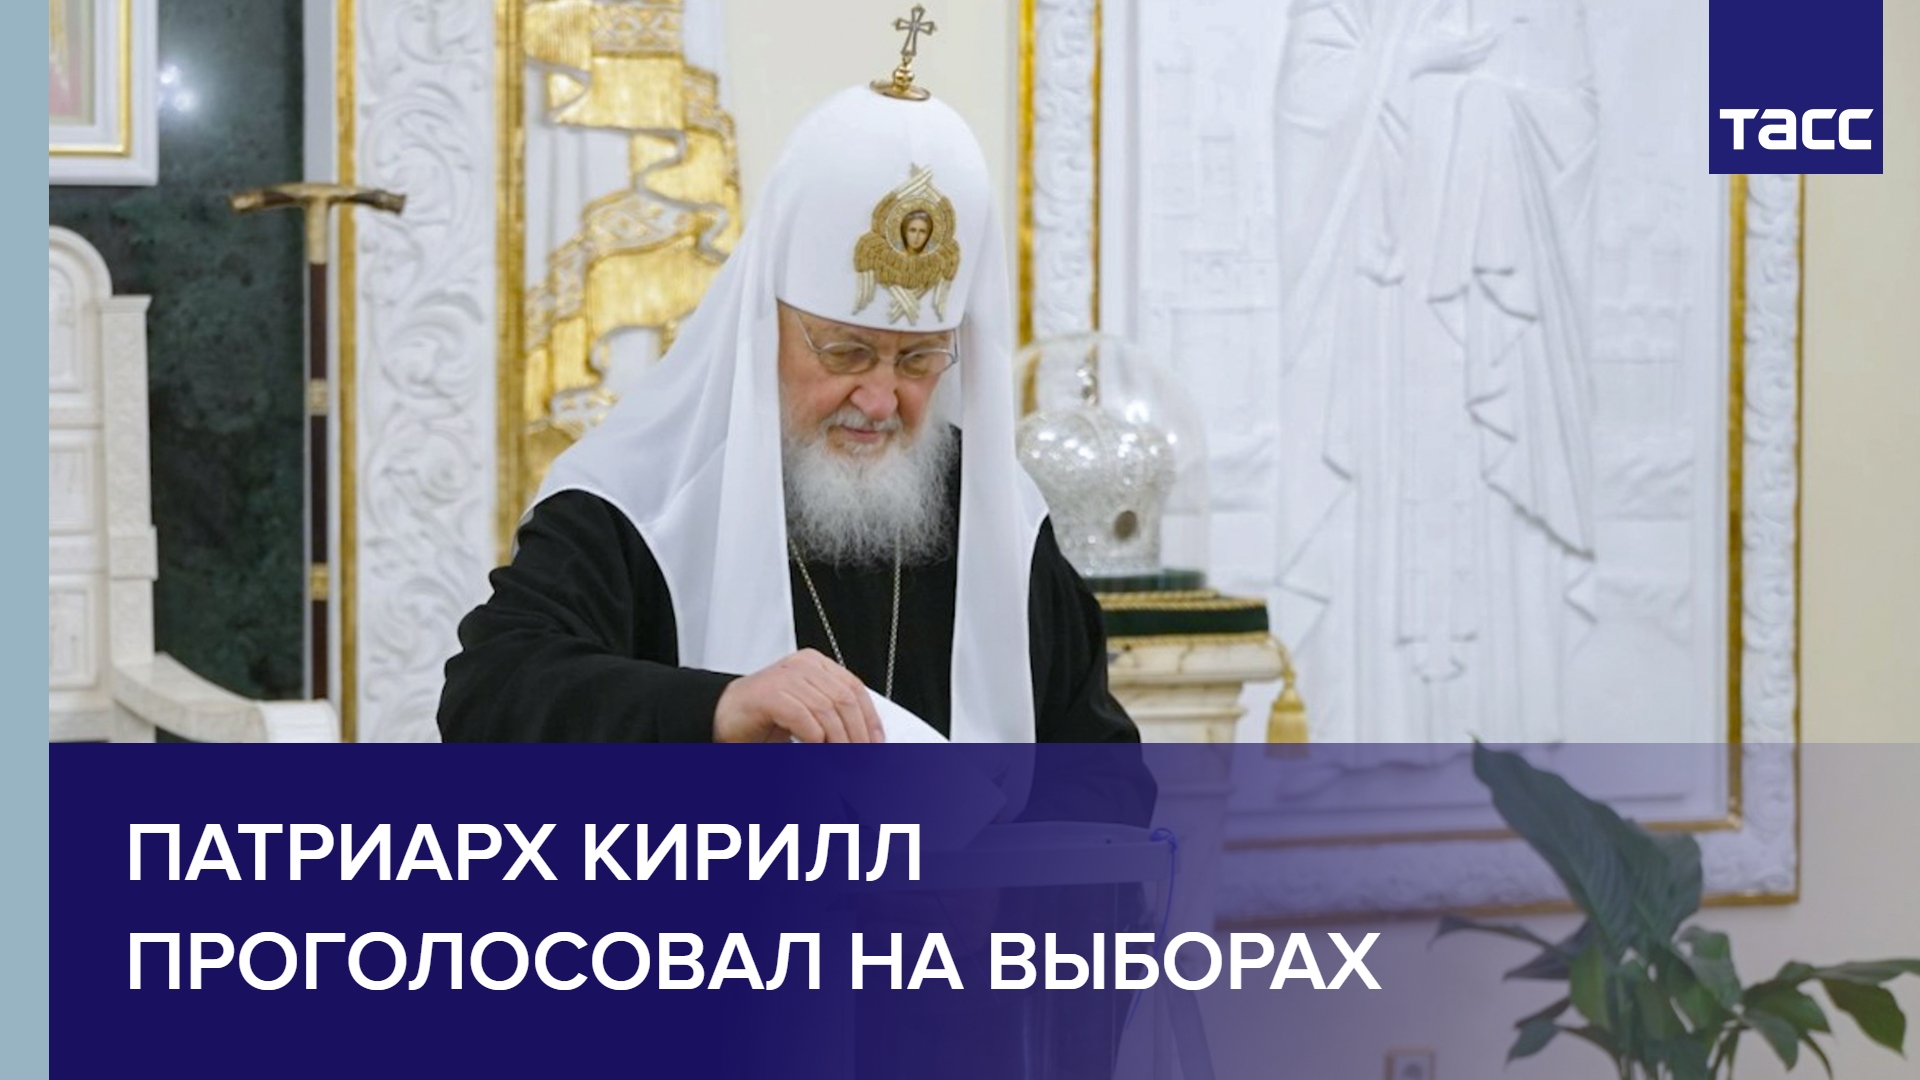 Патриарх Кирилл проголосовал на выборах #shorts